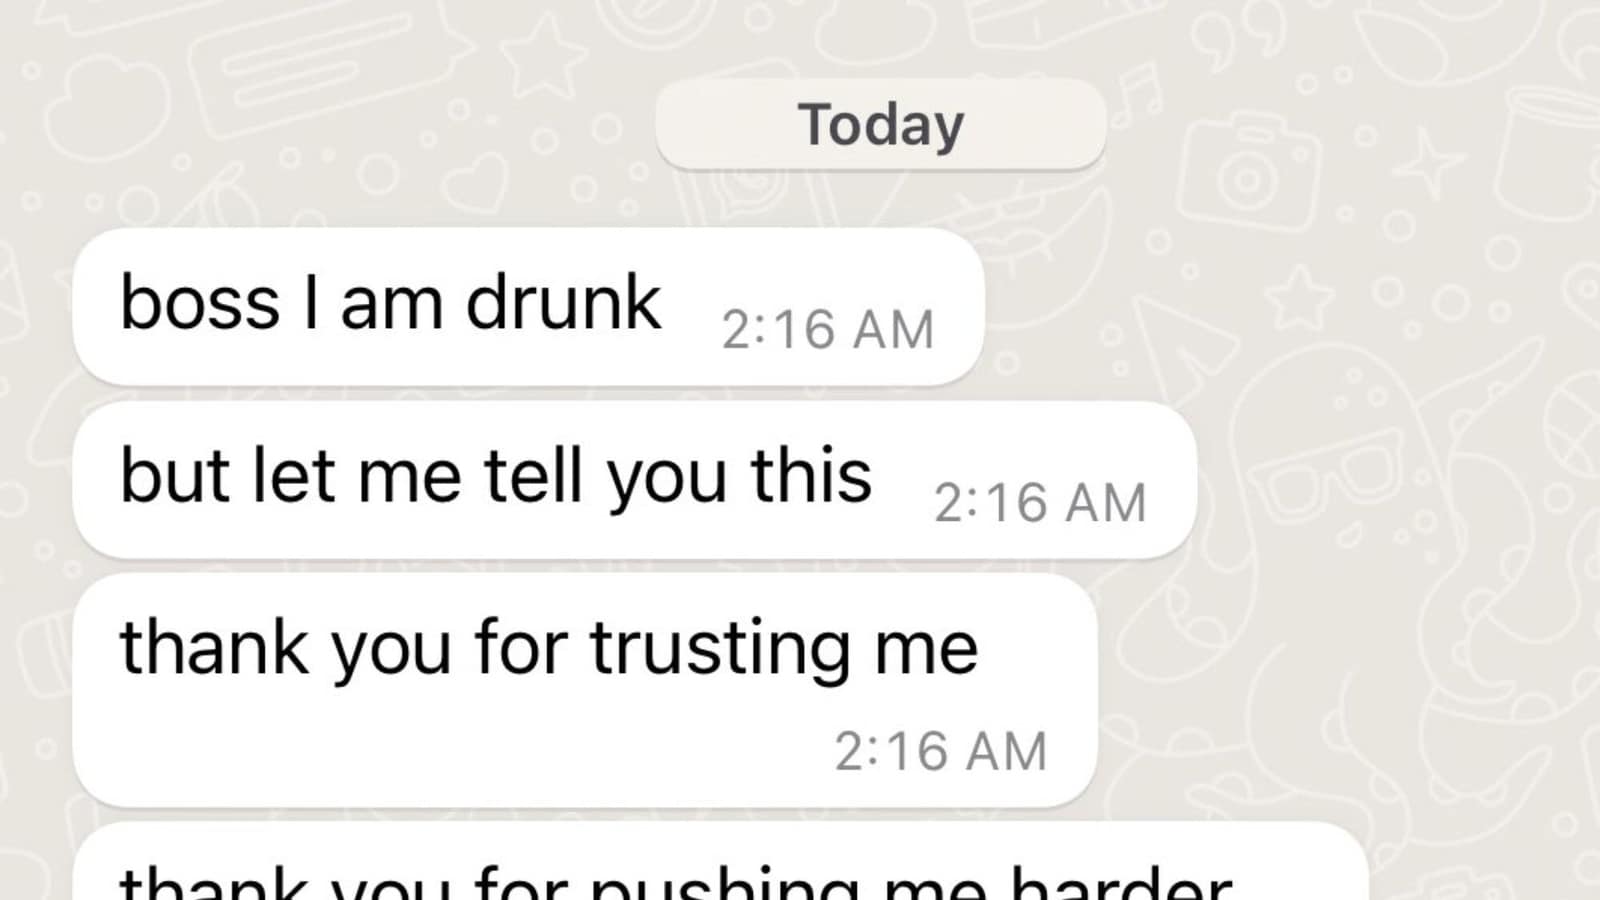 Employee texts boss after a few drinks, WhatsApp messages go viral